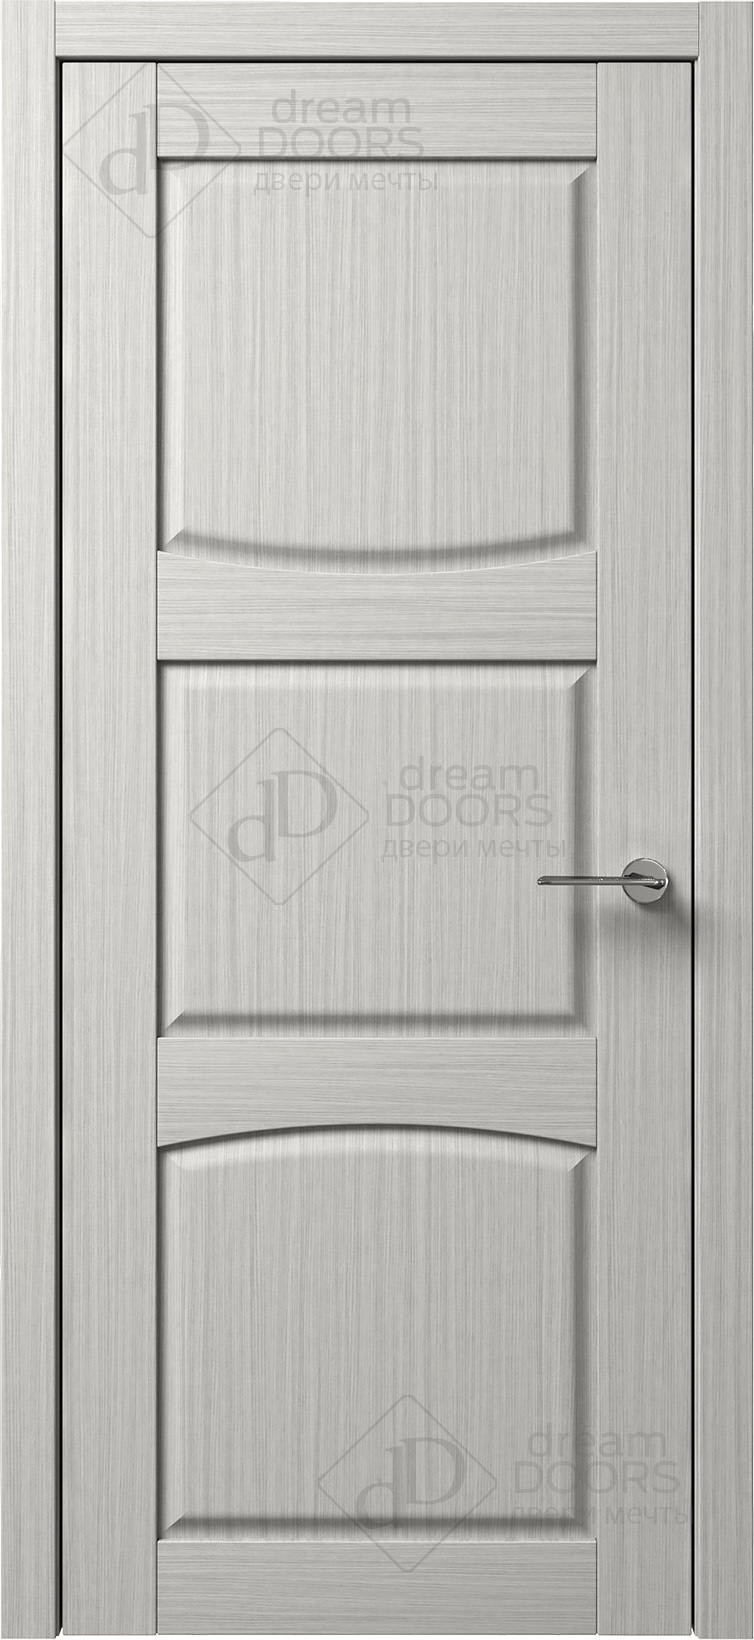 Dream Doors Межкомнатная дверь B15-3, арт. 5593 - фото №1